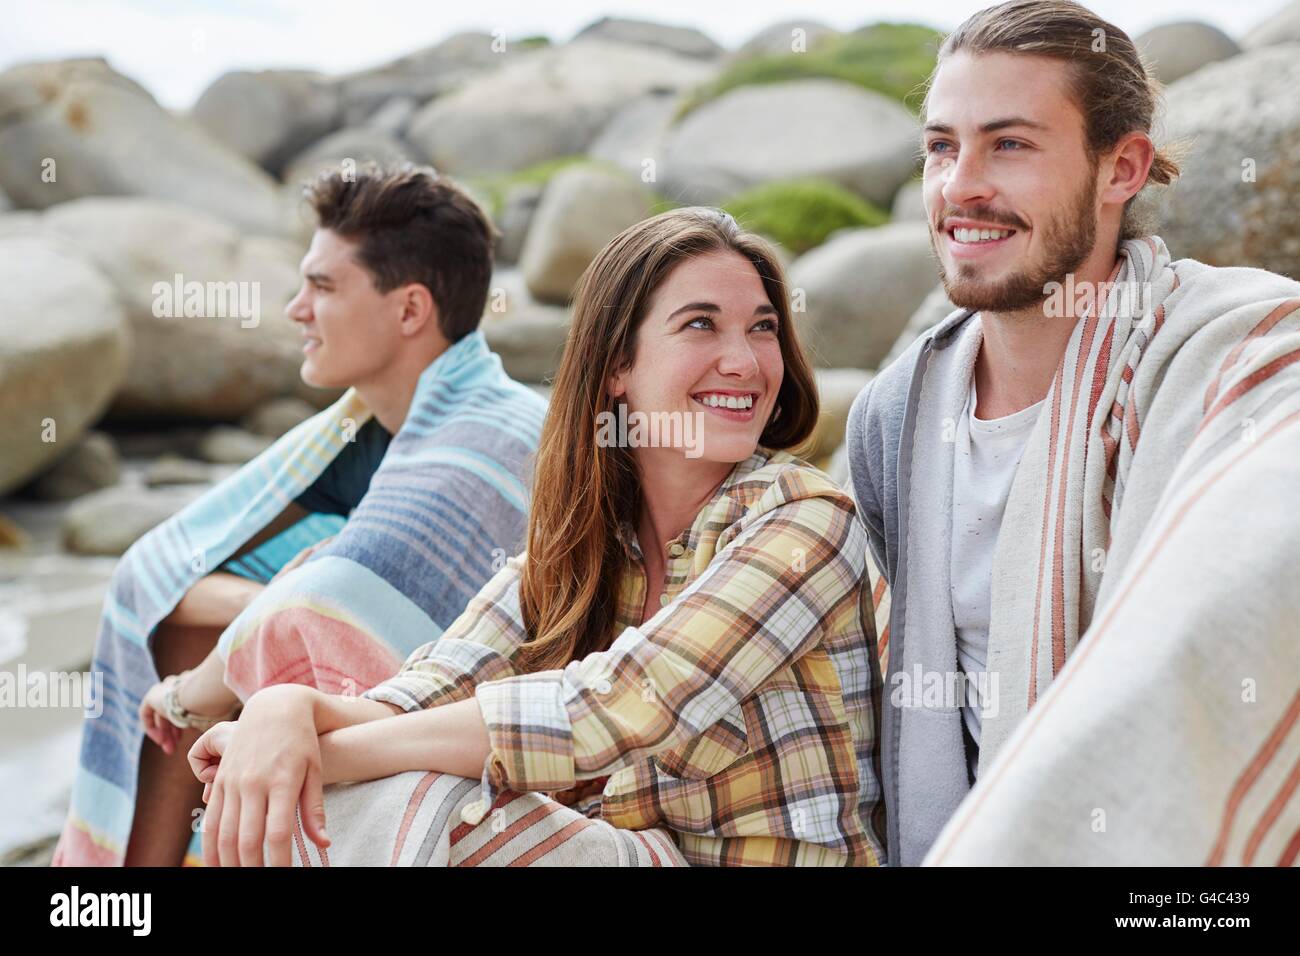 -MODELL VERÖFFENTLICHT. Junge Erwachsene am Strand in Decken gehüllt. Stockfoto